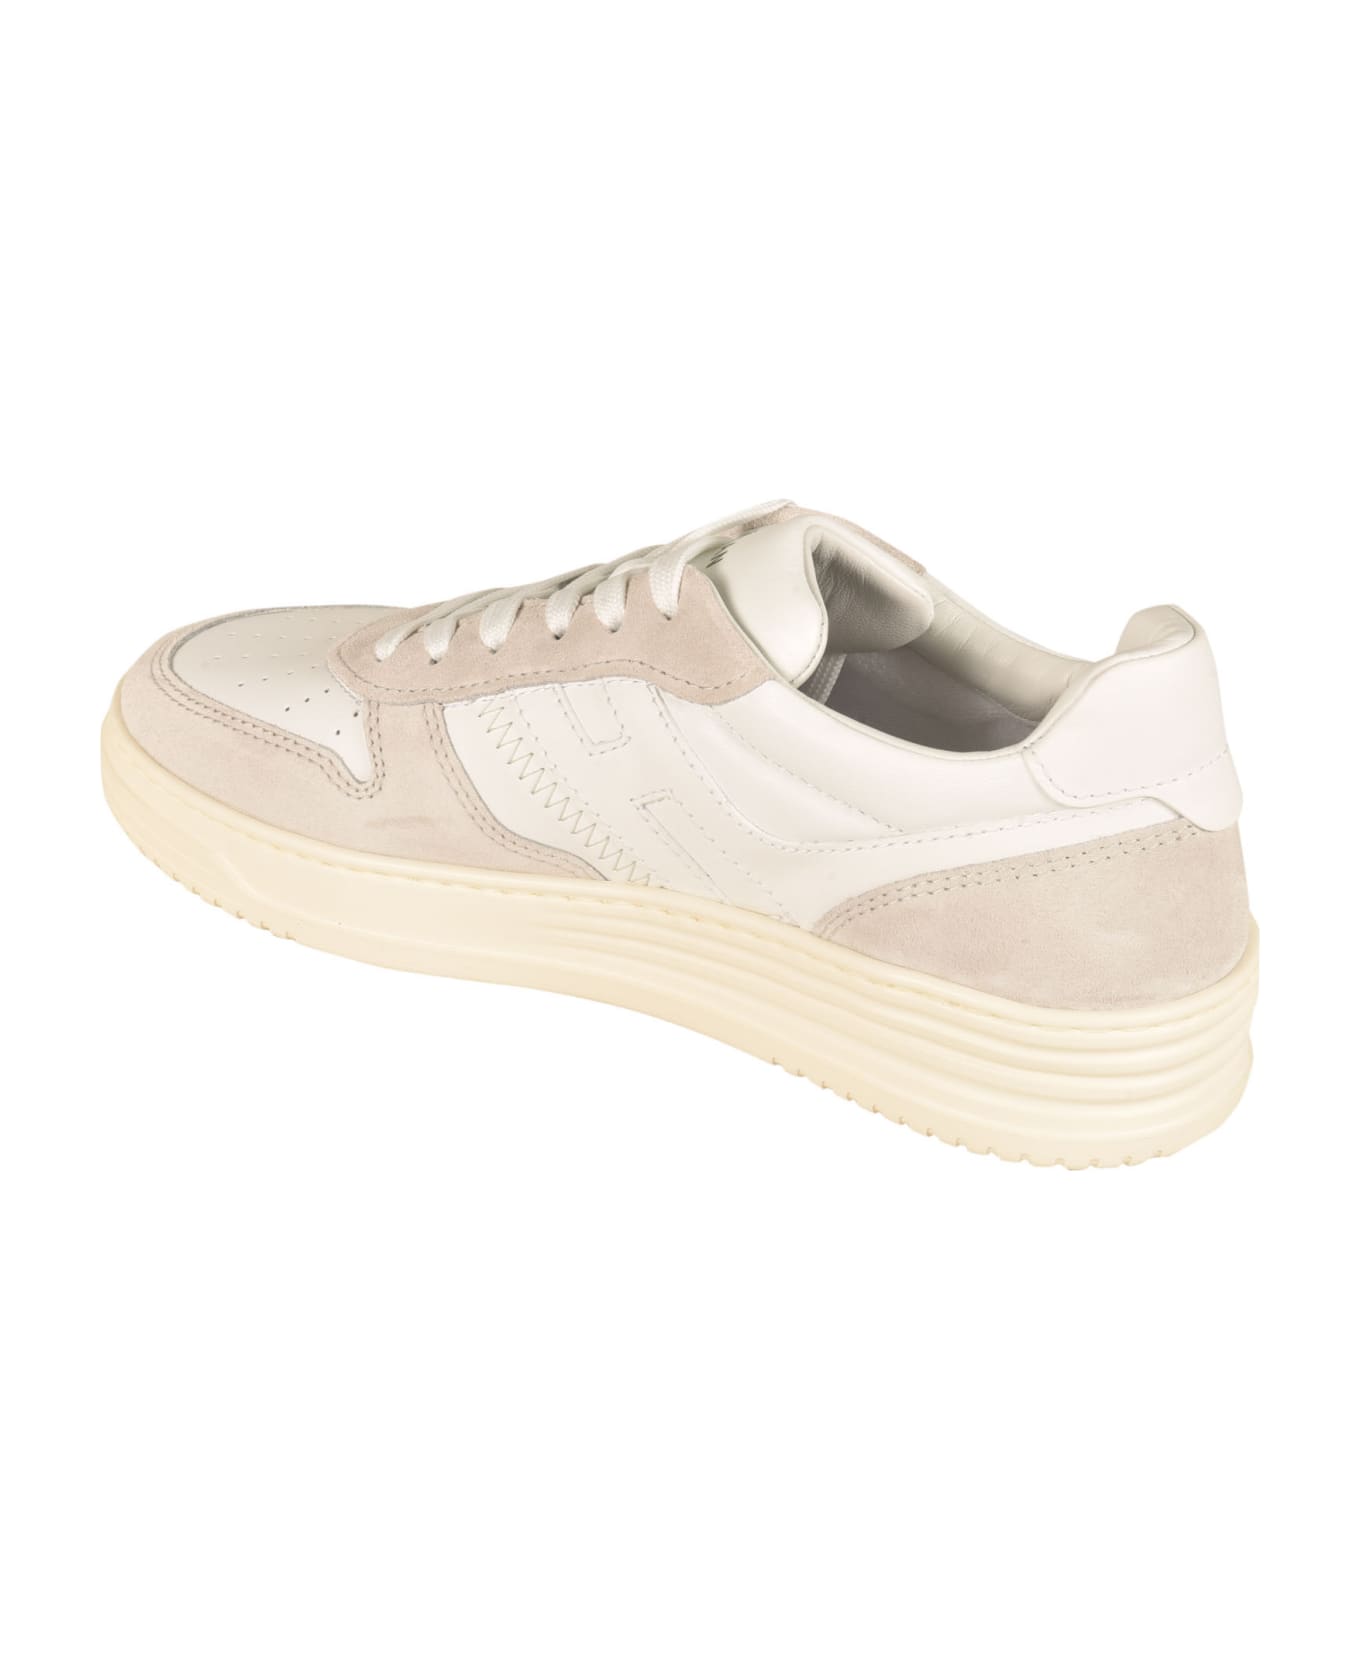 Hogan H630 Sneakers - White スニーカー